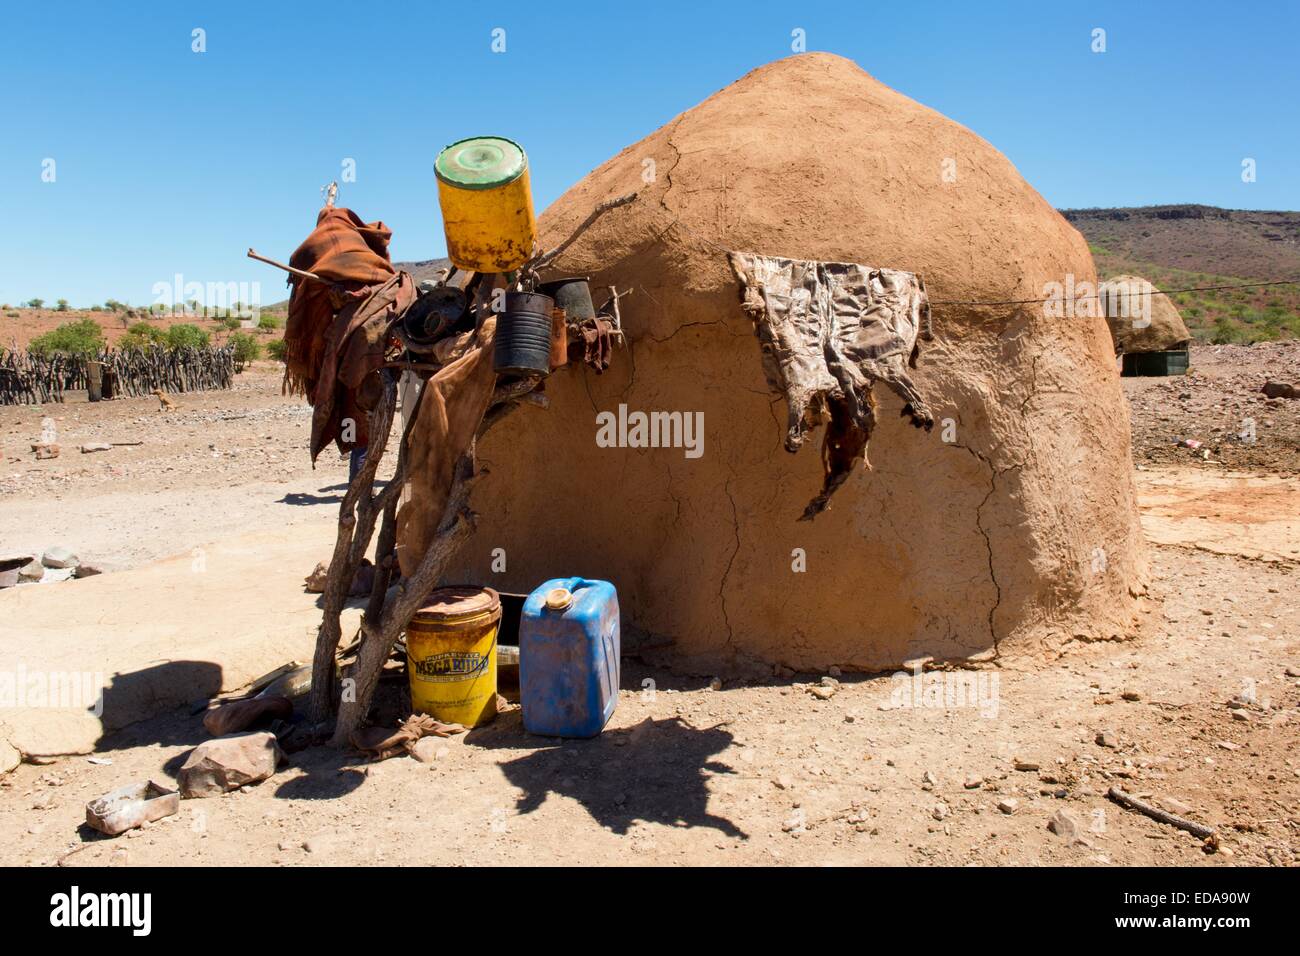 Eine Lehmhütte, Wohnung, Teil eines Himba-Stamm-Dorfes in Damaraland, nördlichen Namibia, Afrika. Stockfoto